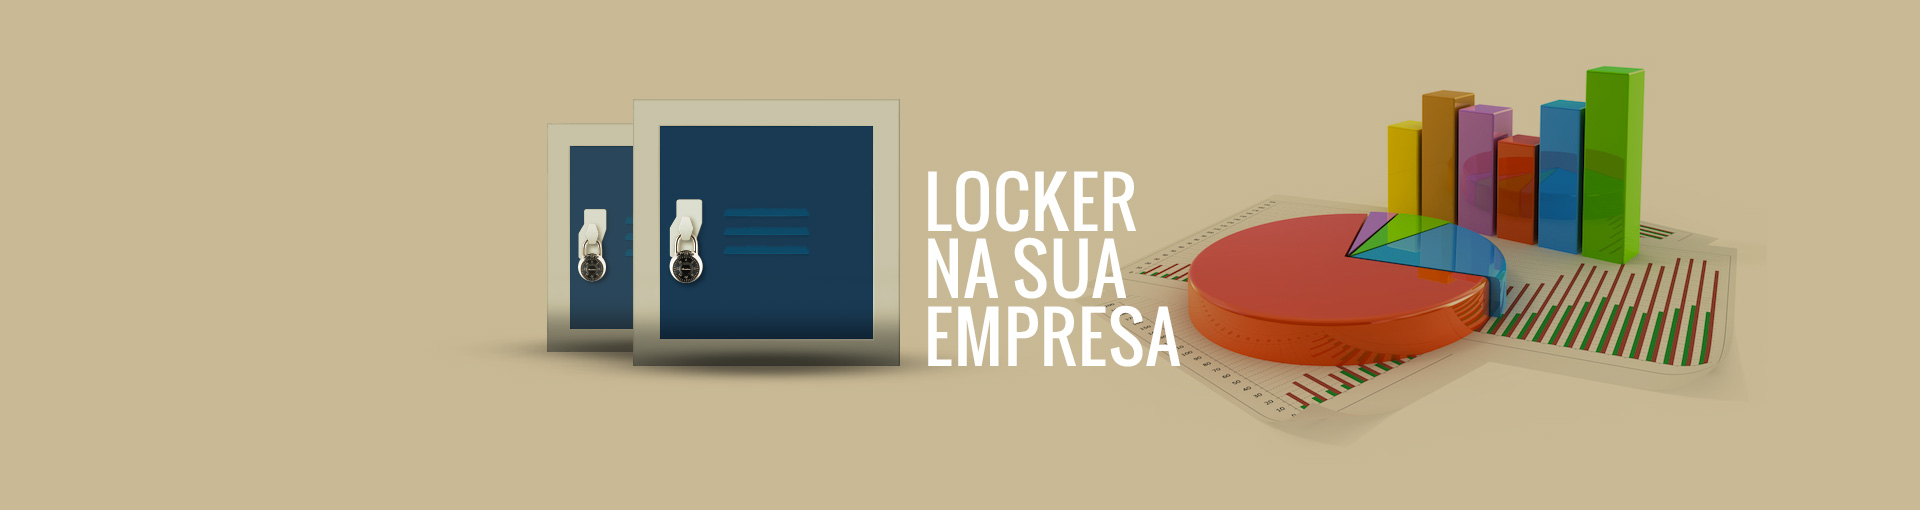 04-locker_banner_site_empresa